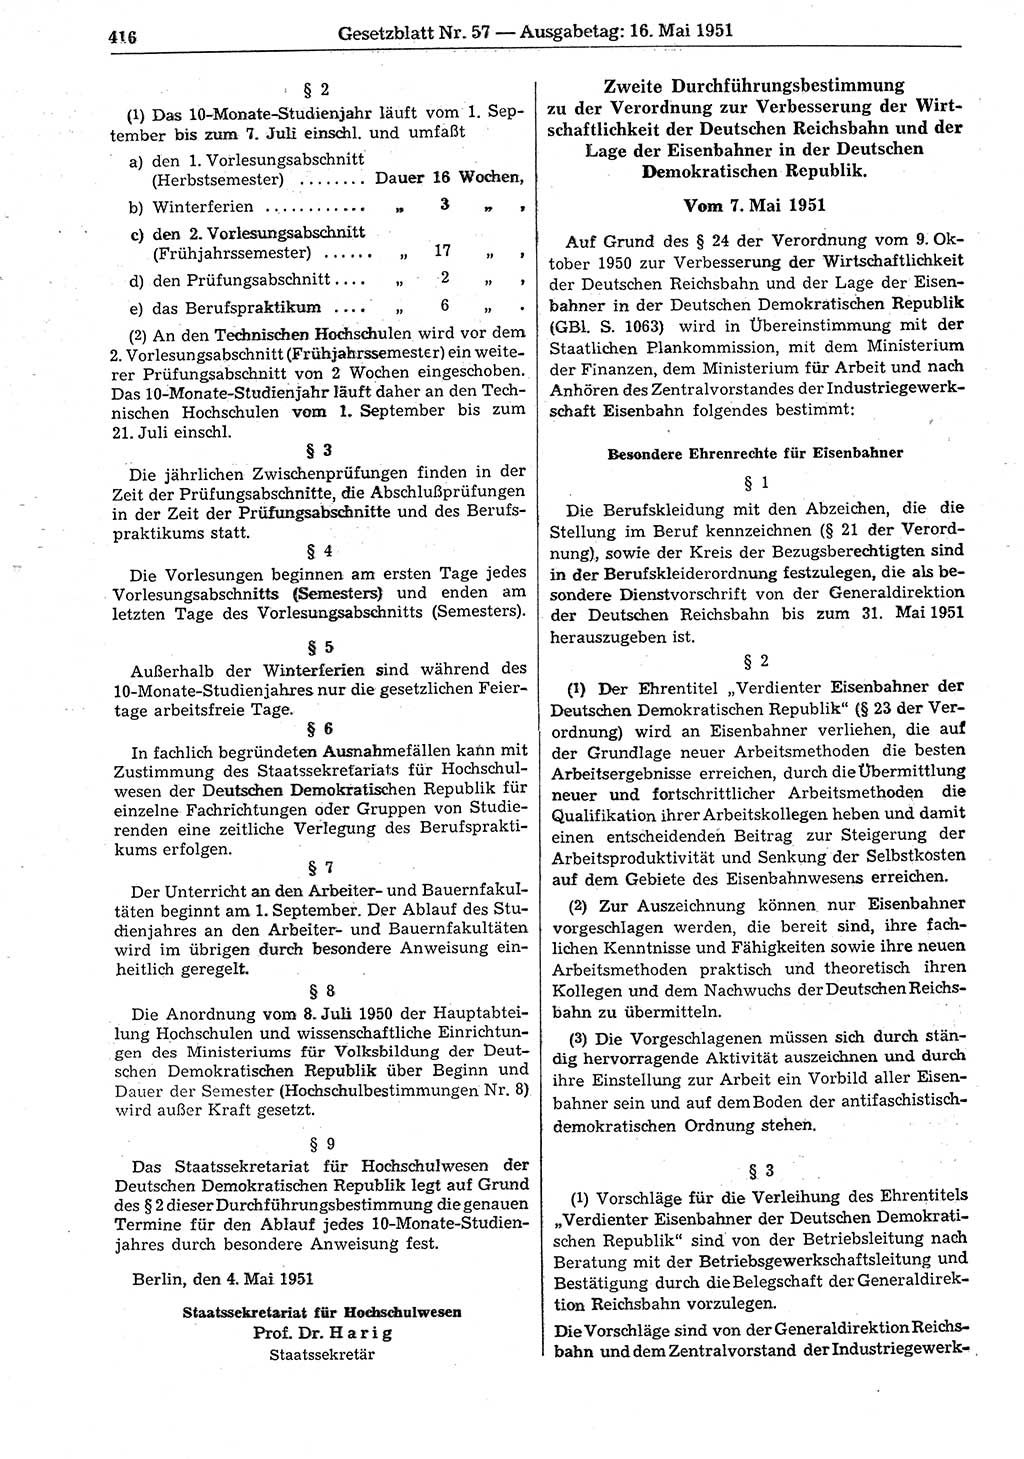 Gesetzblatt (GBl.) der Deutschen Demokratischen Republik (DDR) 1951, Seite 416 (GBl. DDR 1951, S. 416)